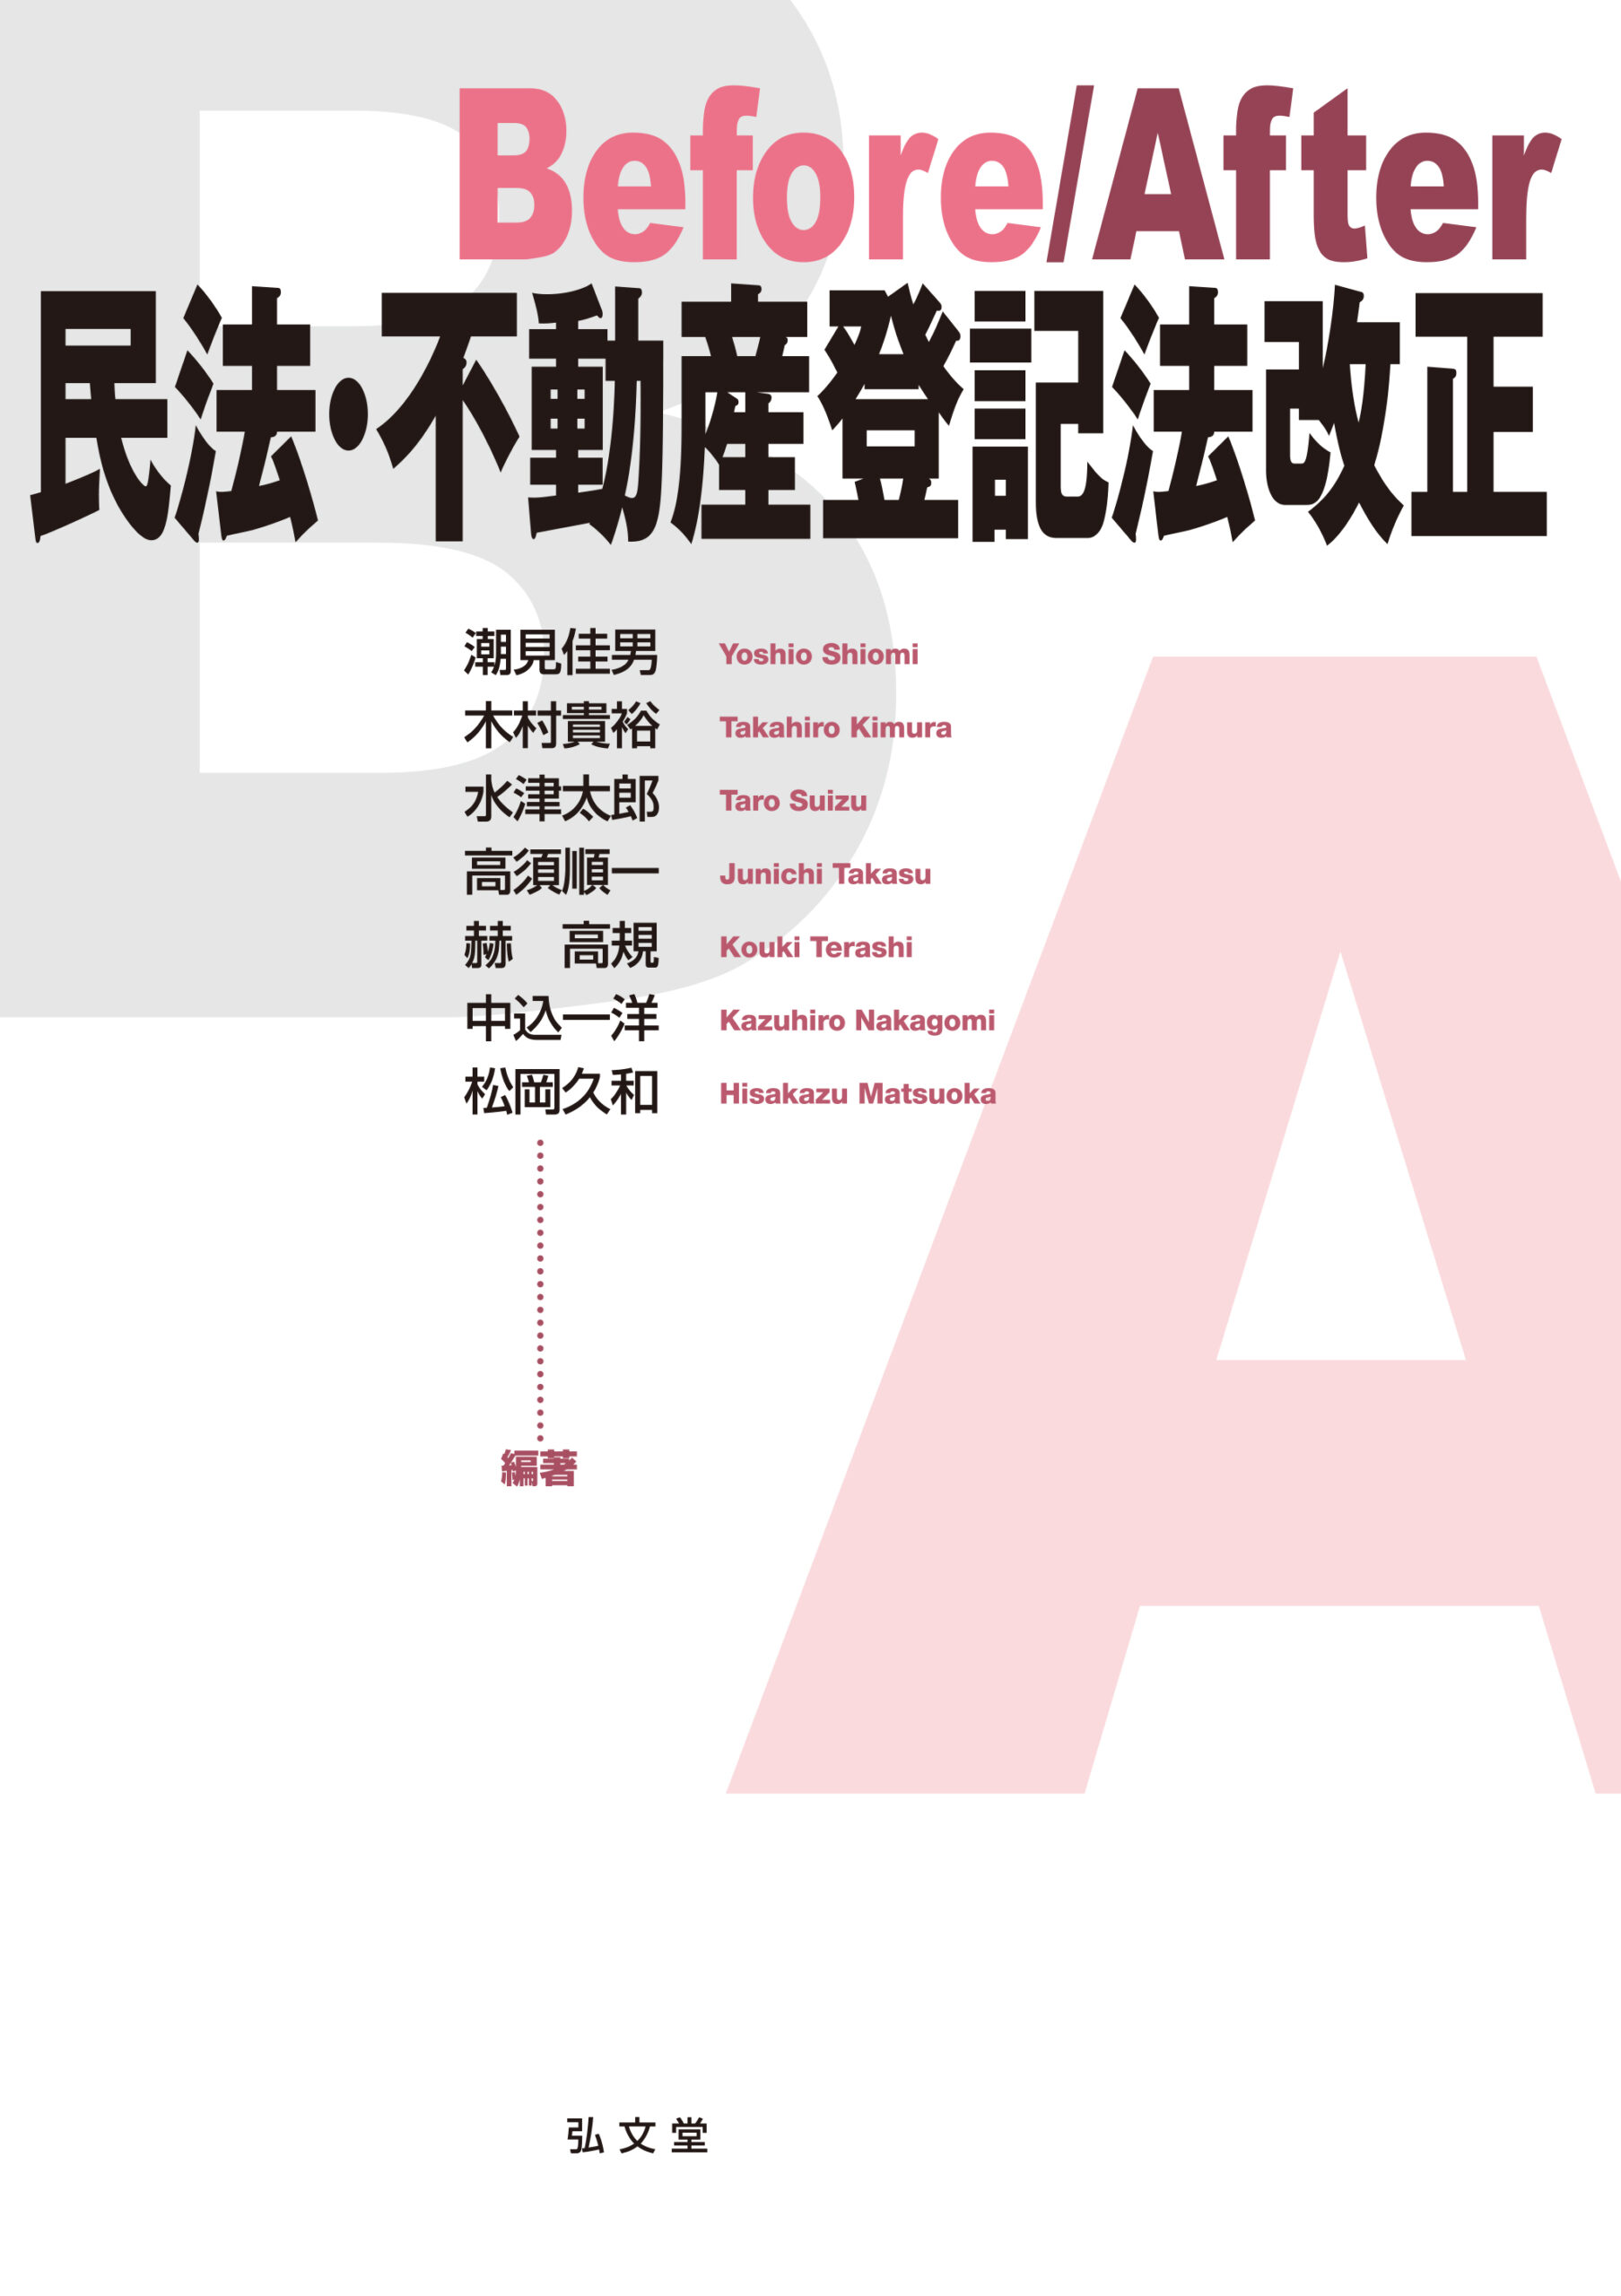 上田純弁護士が執筆に参加した改正民法･不動産登記法(所有者不明土地関連法)に関する書籍が出版されました。